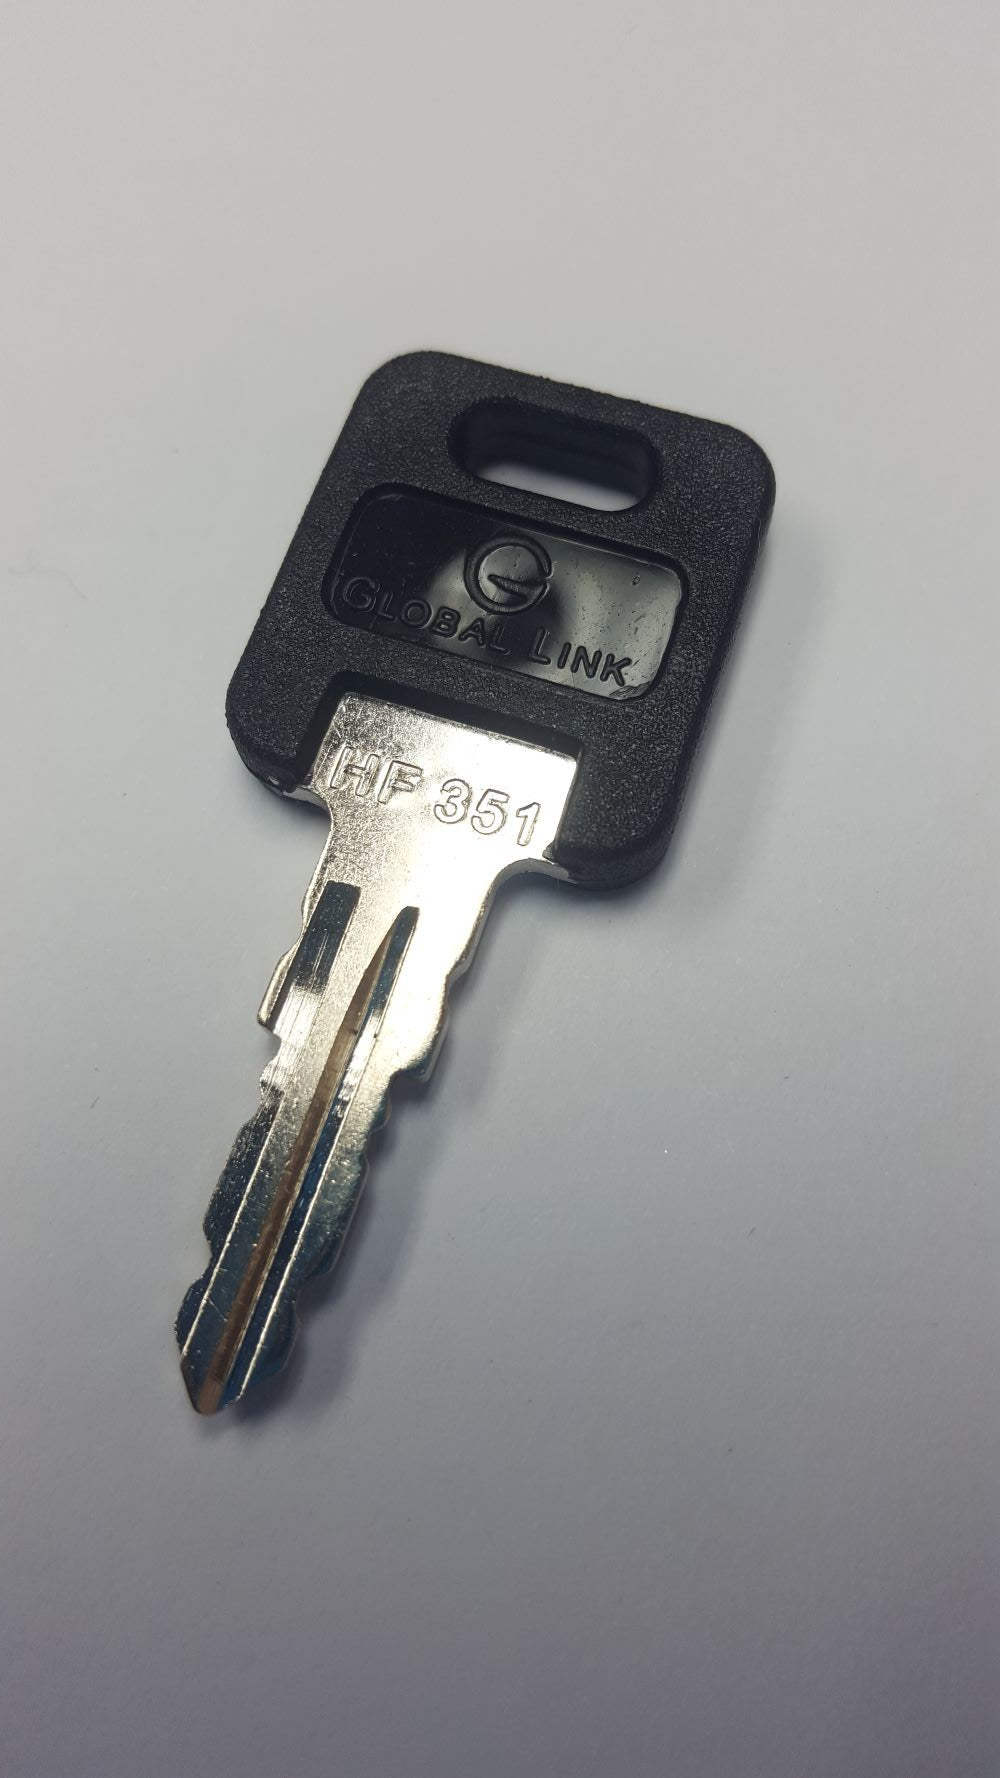 CPG KEY-HF-351 Pre-cut Stamped FIC Replacemnt HF351 Key